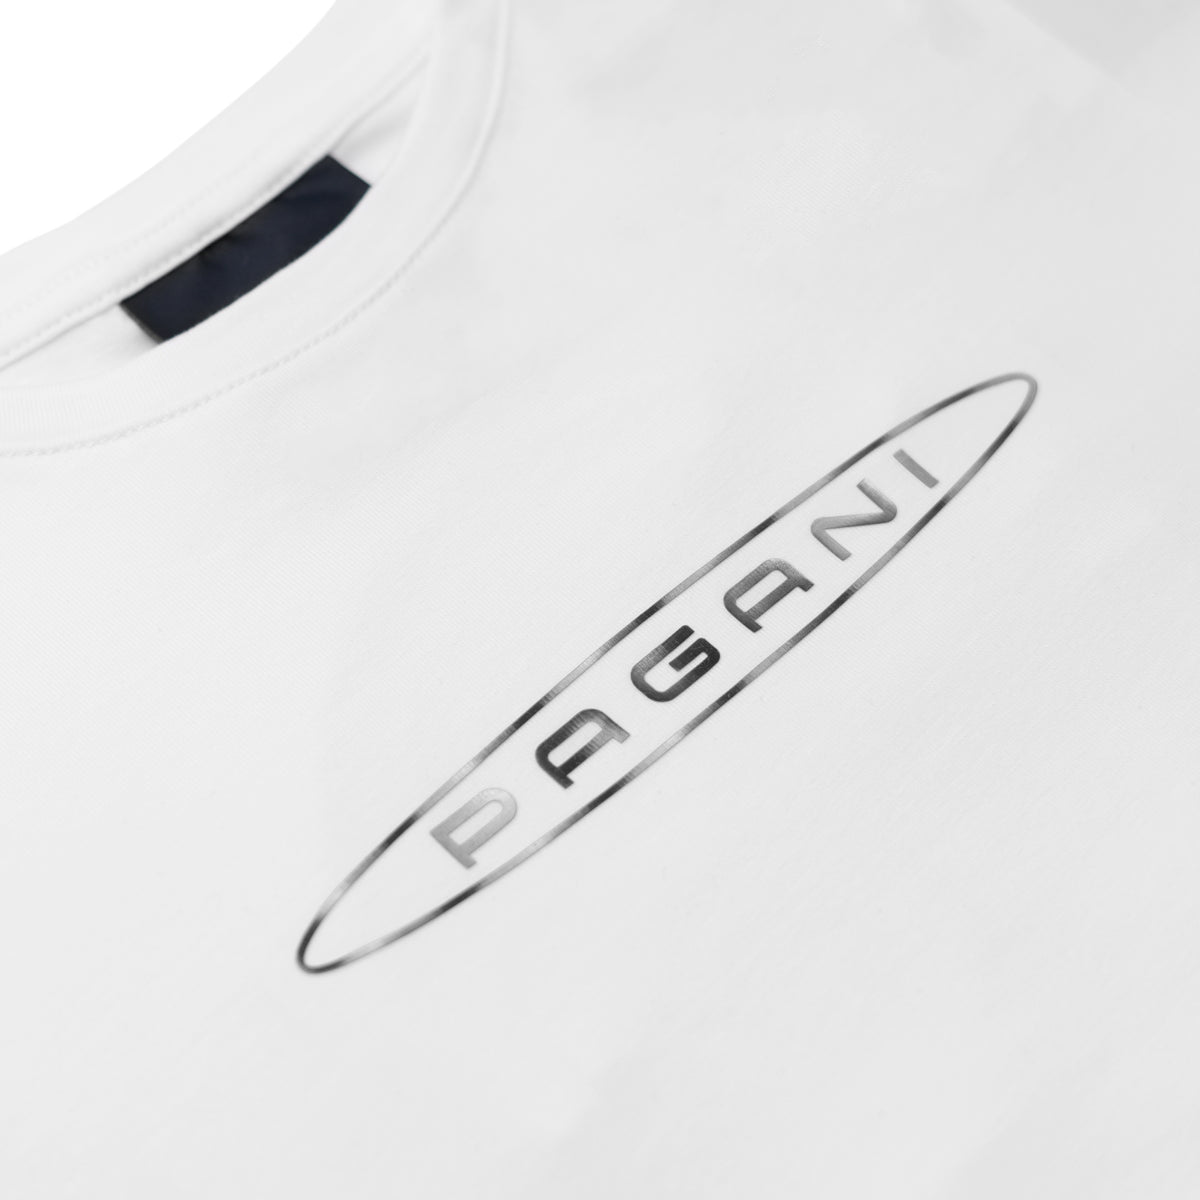 T-Shirt Basique Enfant blanc | Team Collection